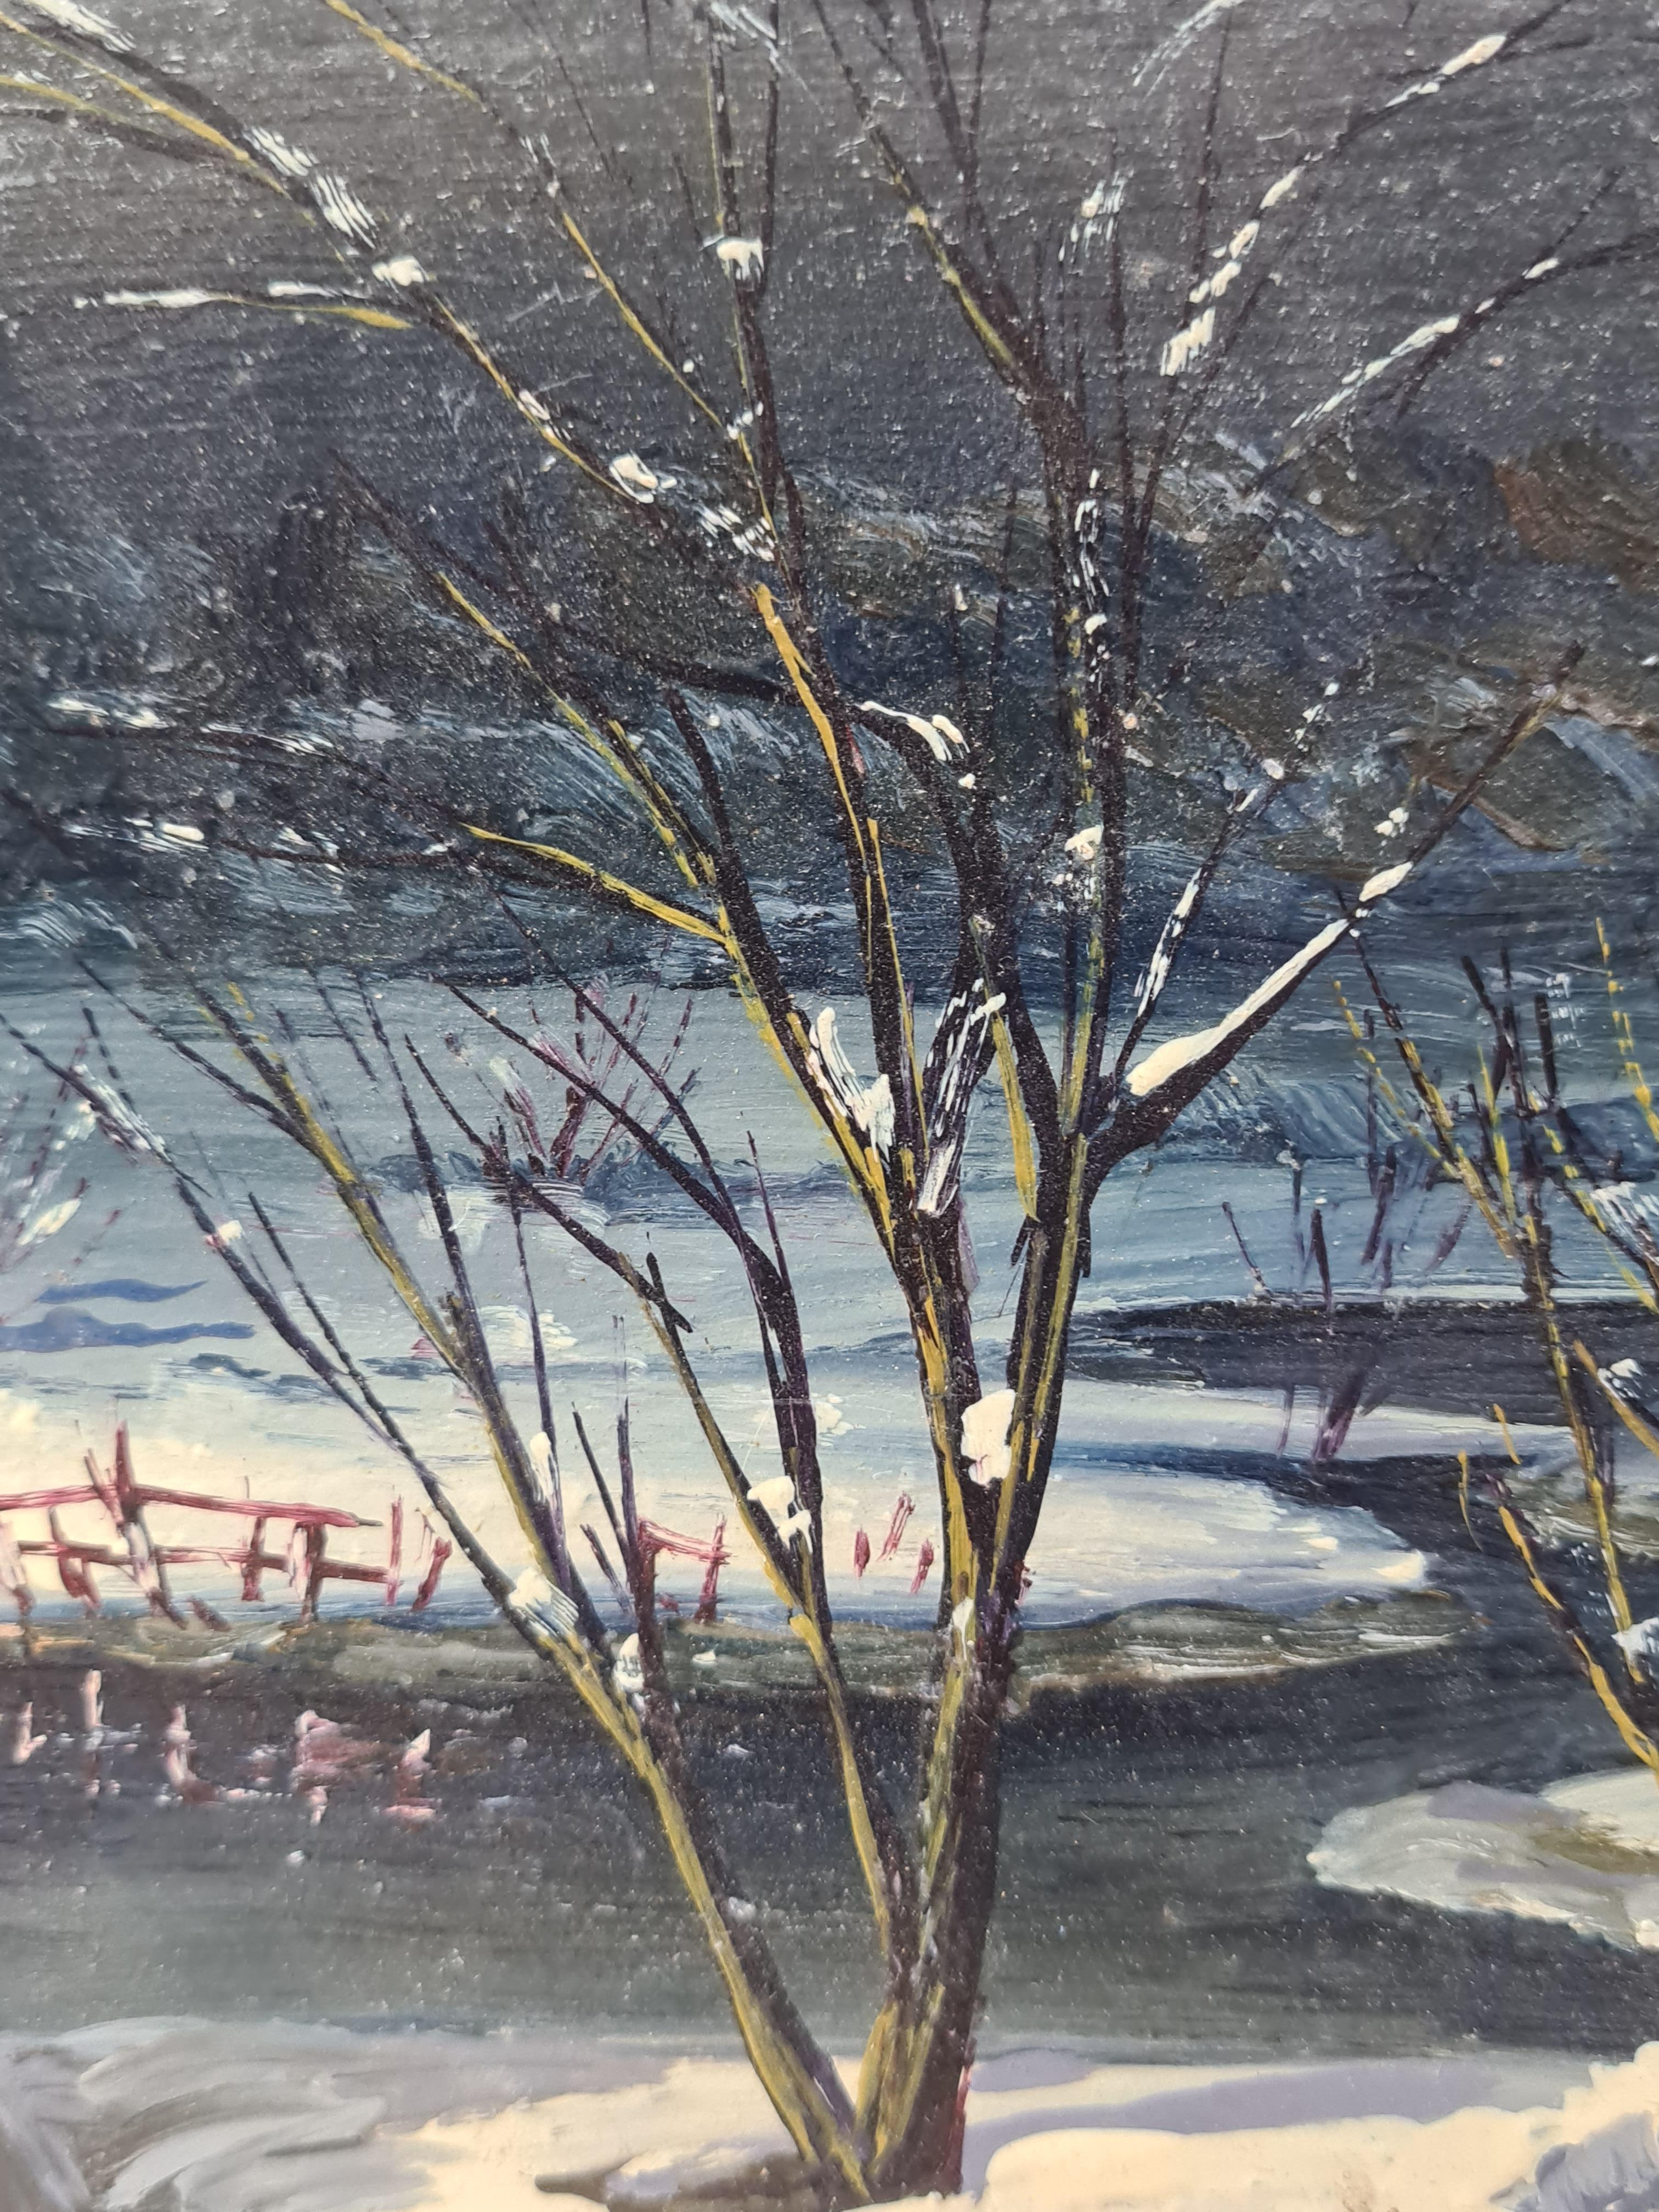 Huile sur panneau représentant une scène de neige hivernale par Boggio. Le tableau est signé en bas à droite.

Une charmante vue d'une scène de neige, une rivière coulant sous un pont chargé de neige. Un sapin de Noël aux branches chargées de neige,